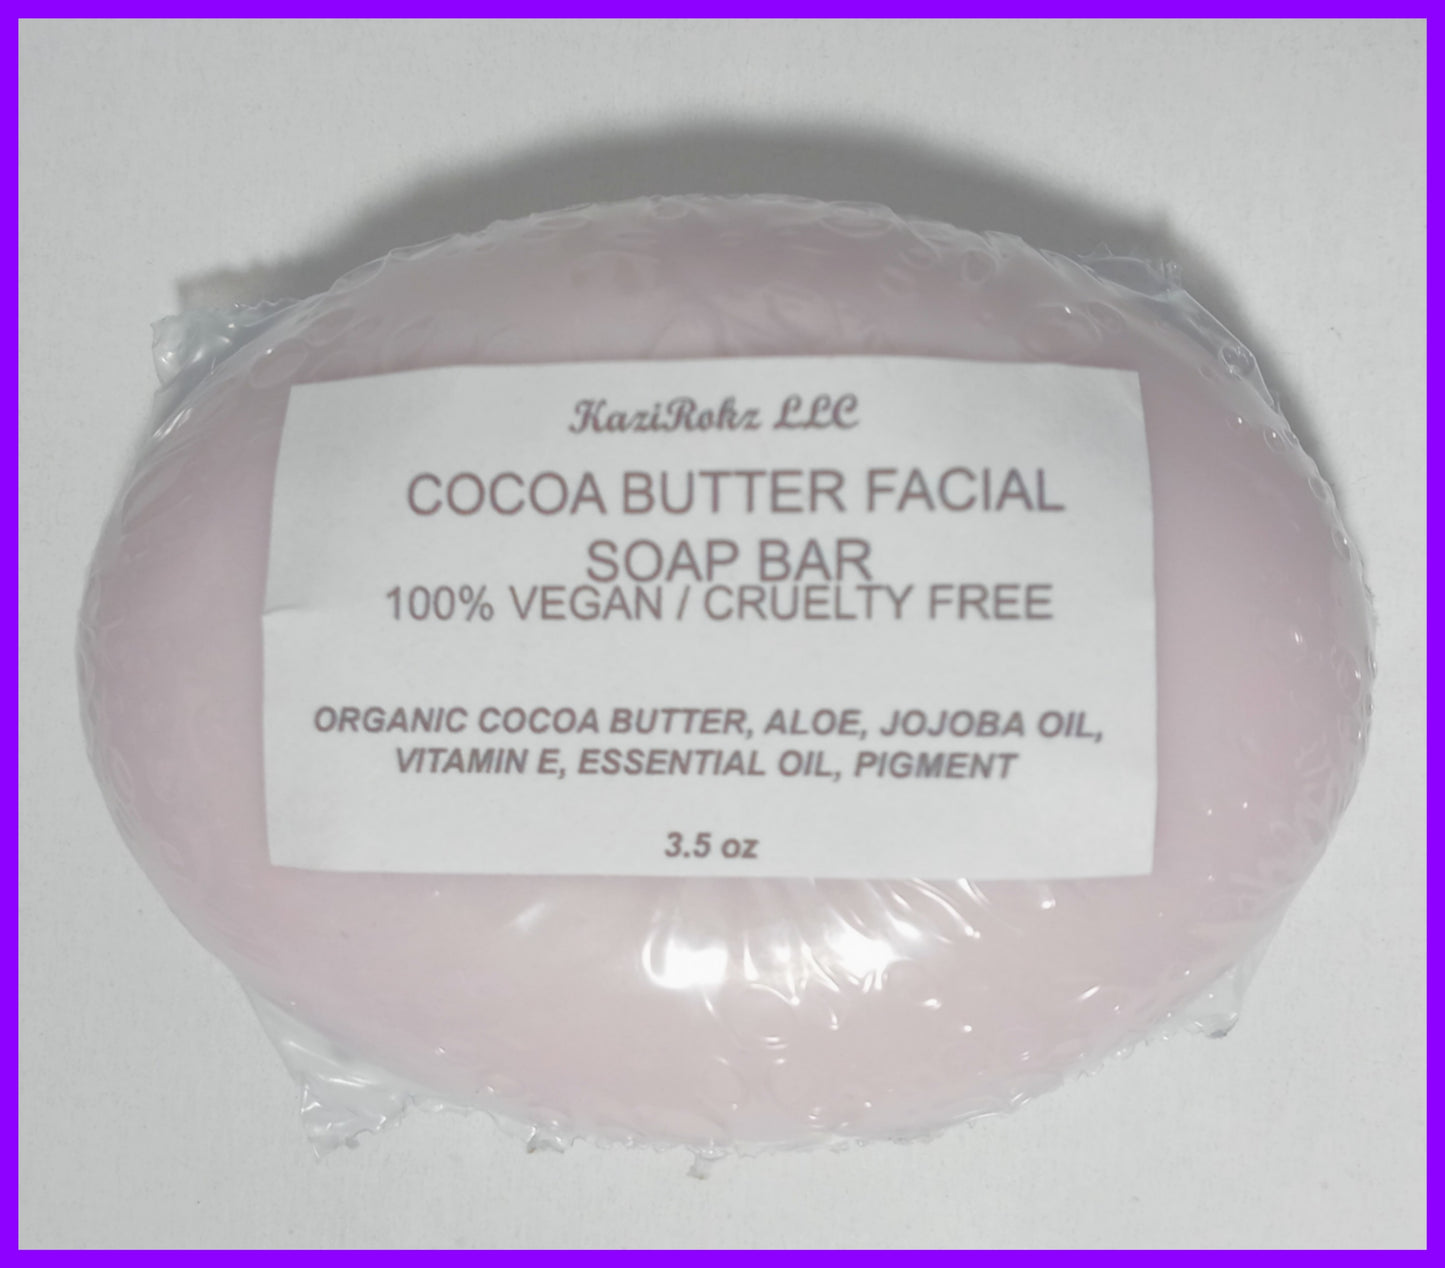 Cocoa Butter Facial Soap Bar (100% Vegan / Cruelty Free)